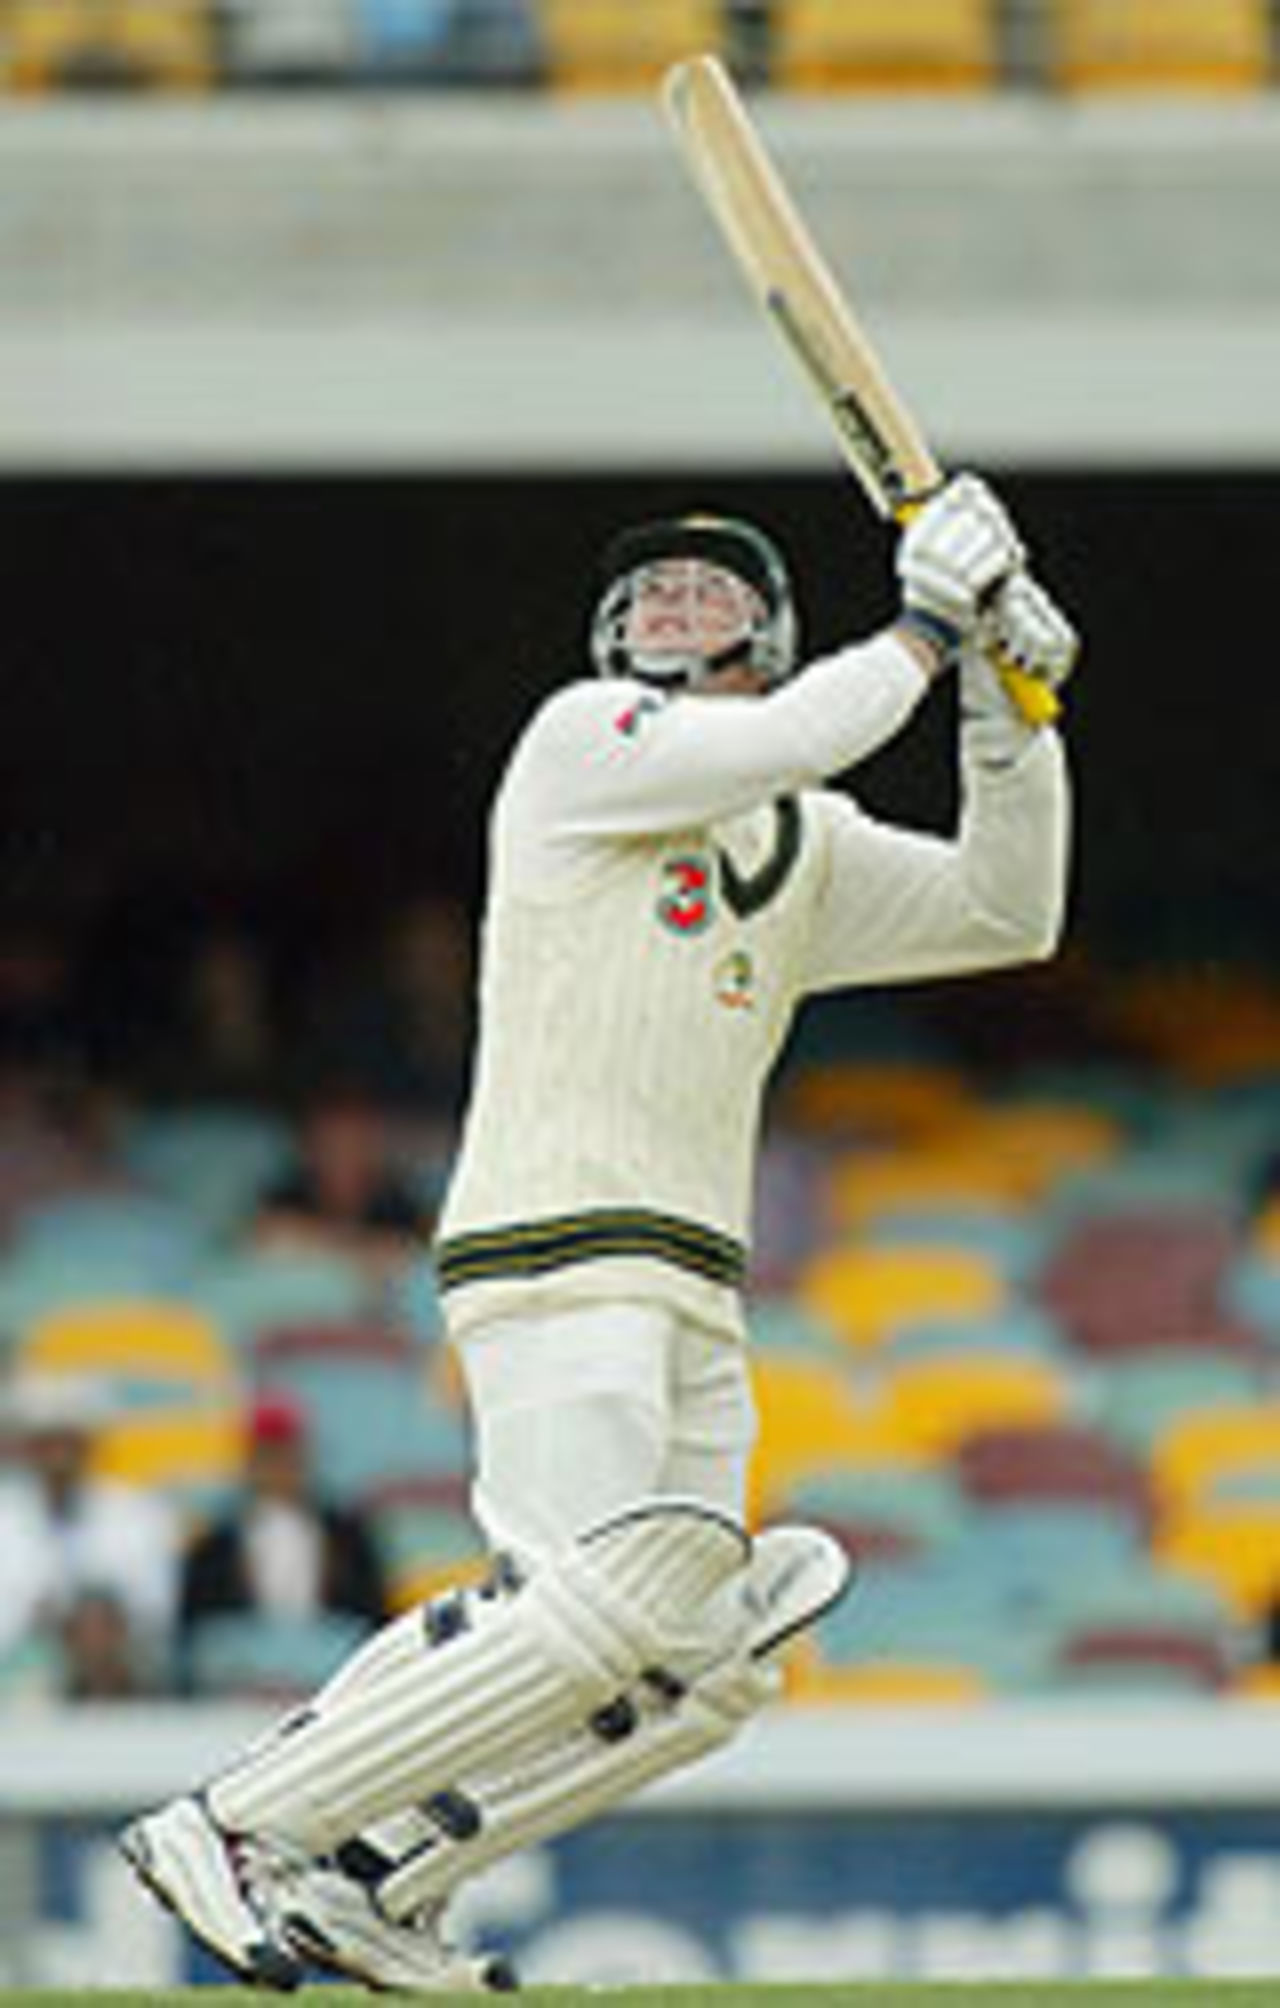 Stuart McGill edges Ajit Agarkar, Australia v India, 1st Test, Brisbane, 3rd day, December 6, 2003